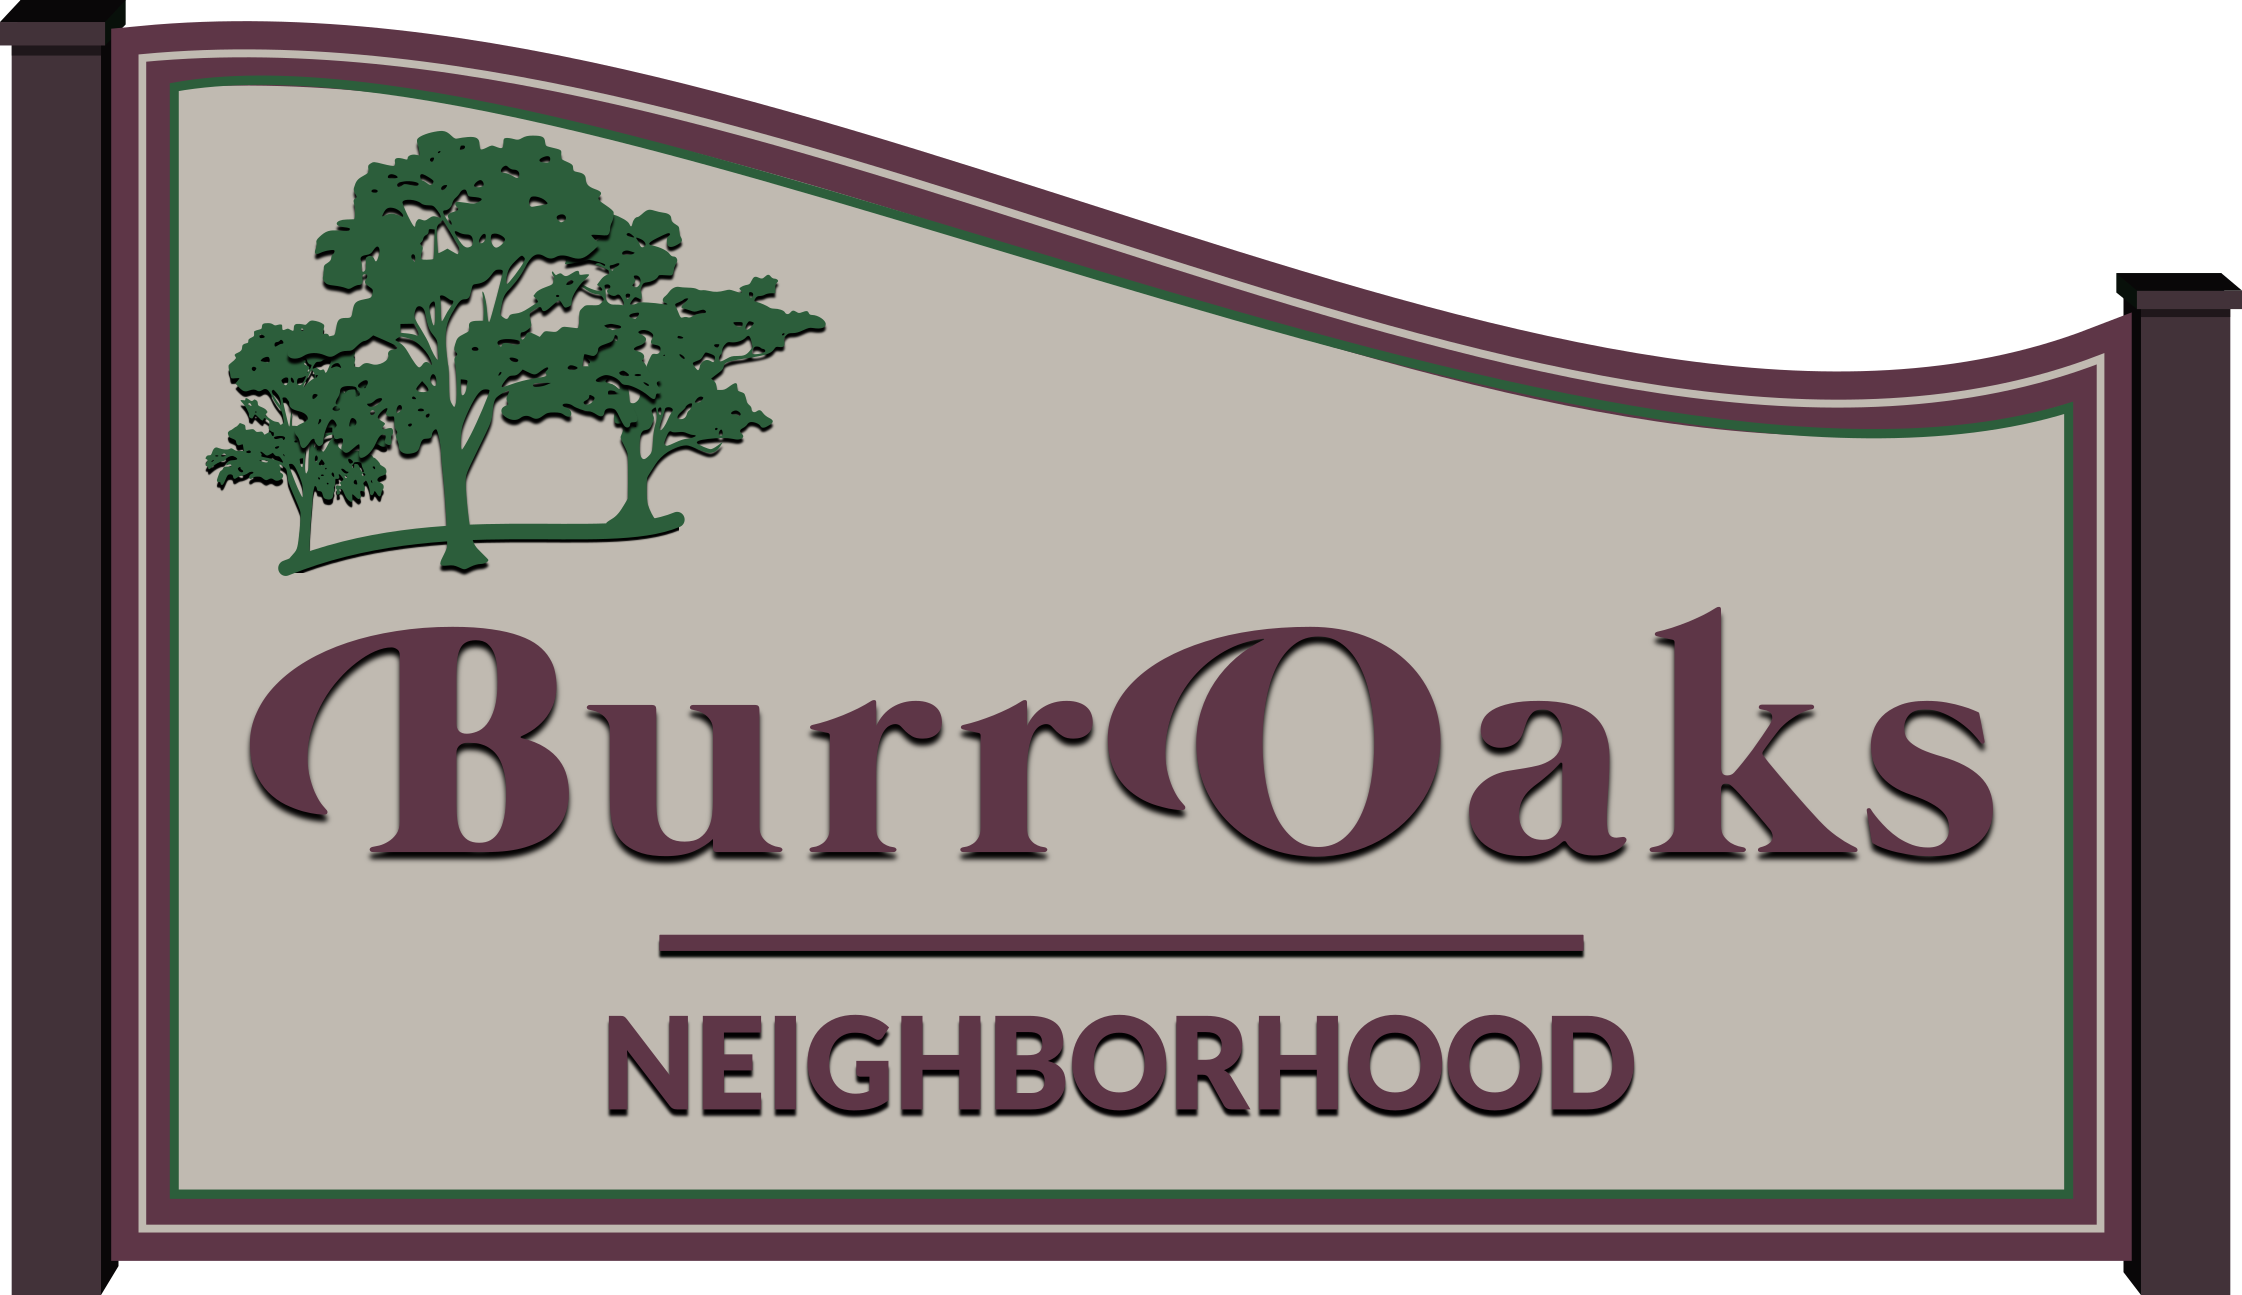 Madison's Burr Oaks Neighborhood